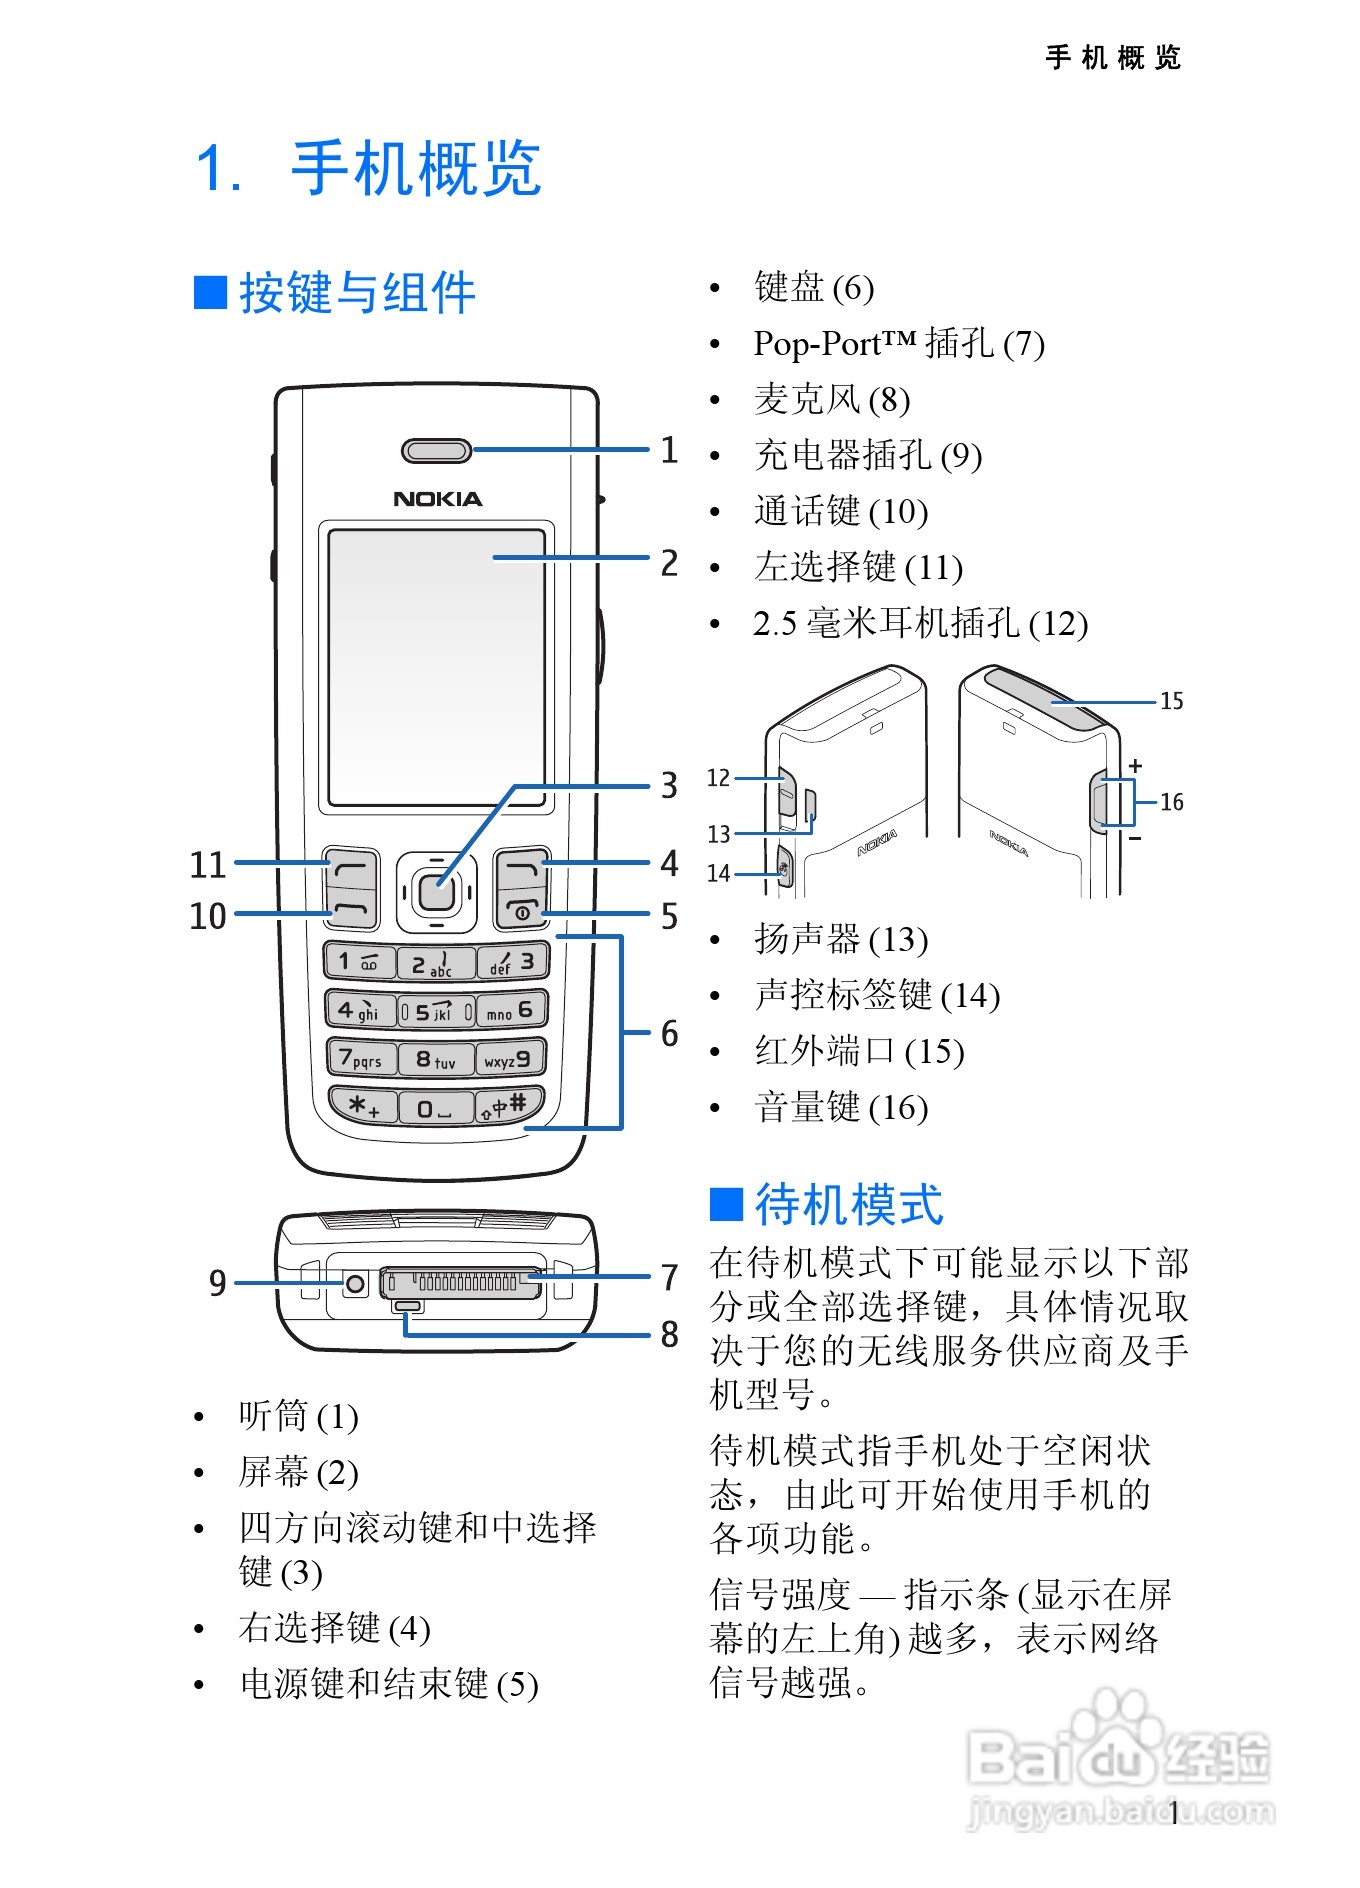 诺基亚2865手机使用说明书:[1]